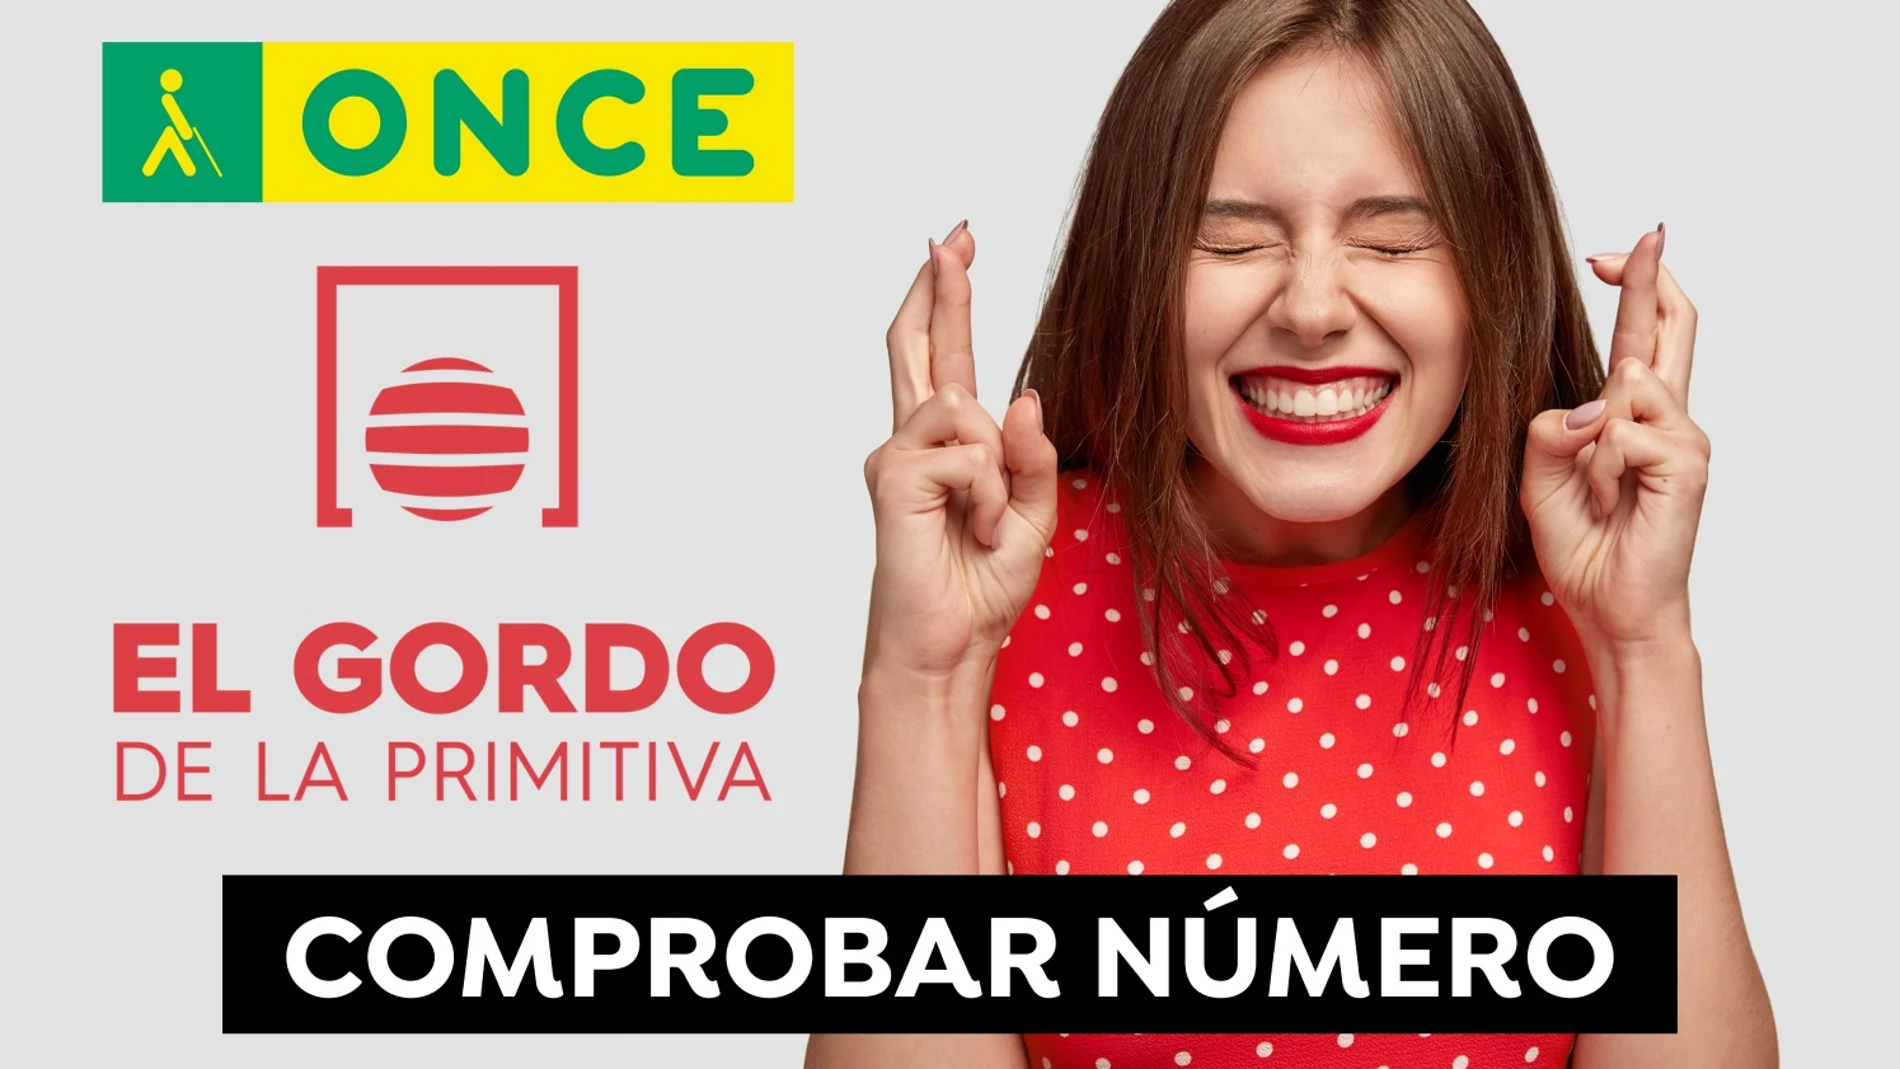 Comprobar ONCE y Gordo Primitiva: Resultado de la lotería del domingo